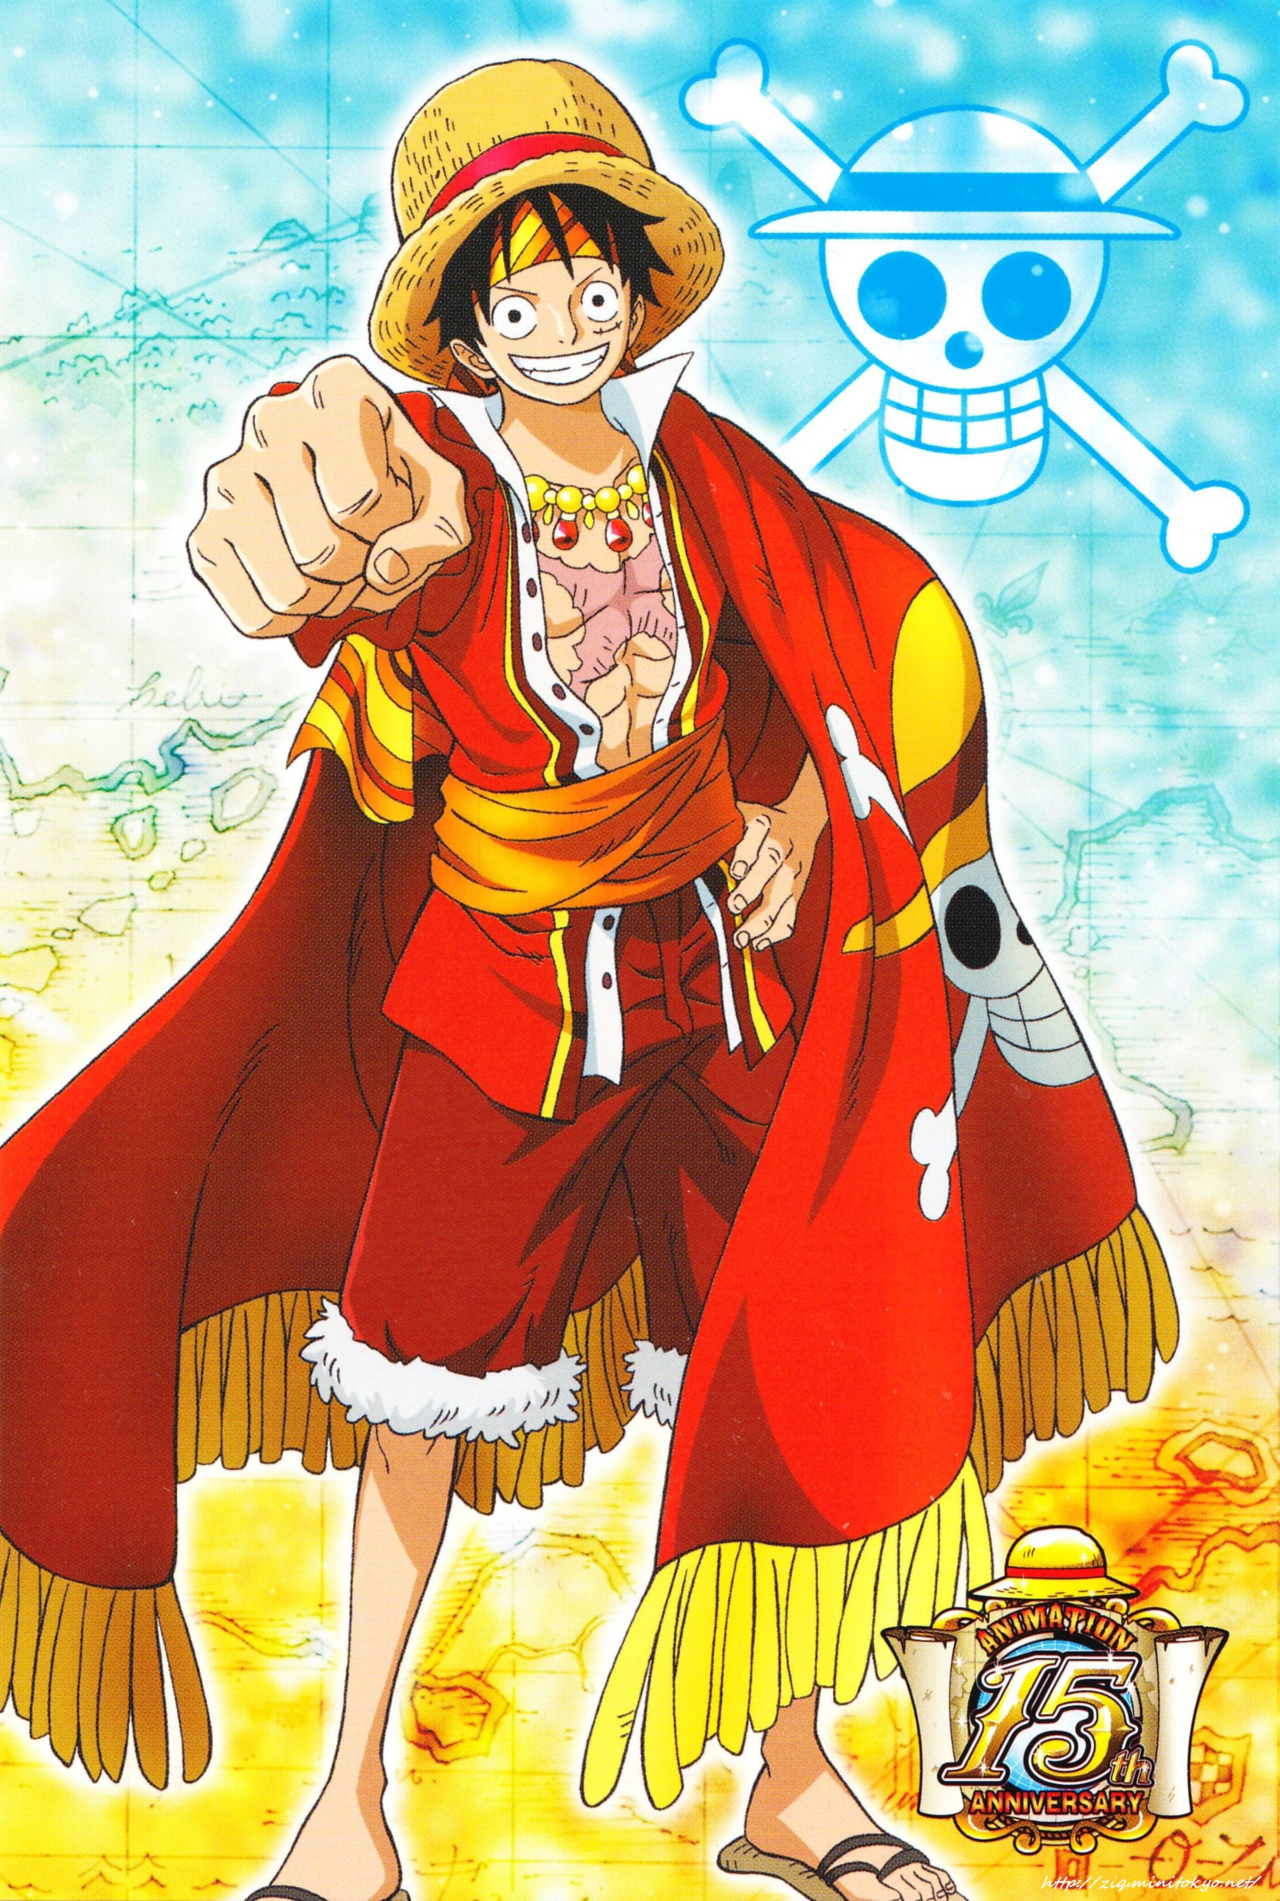 One Piece: Những người hâm mộ truyện tranh nên xem bức ảnh nào về One Piece! Thtantai2.edu.vn có đầy đủ các nhân vật từ bộ truyện nổi tiếng, mang đến cho bạn những khoảnh khắc kinh điển của họ cùng với cảnh vật tuyệt đẹp.